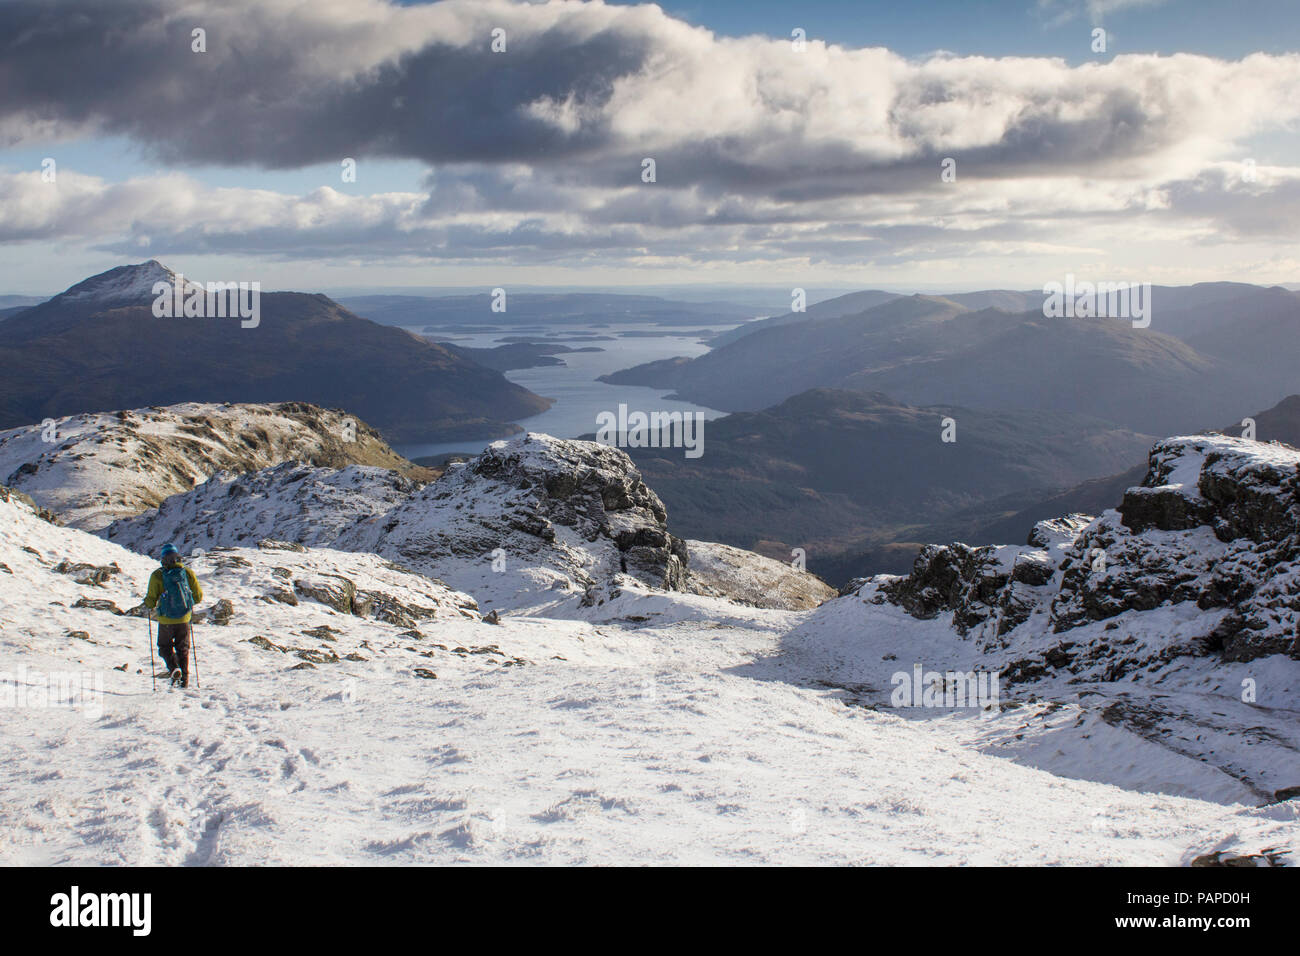 Un grimpeur escalade la montagne couverte de neige en hiver, Ben Vorlick avec Ben Lomond et les Trossachs de montagnes en vue. L'Écosse. Banque D'Images